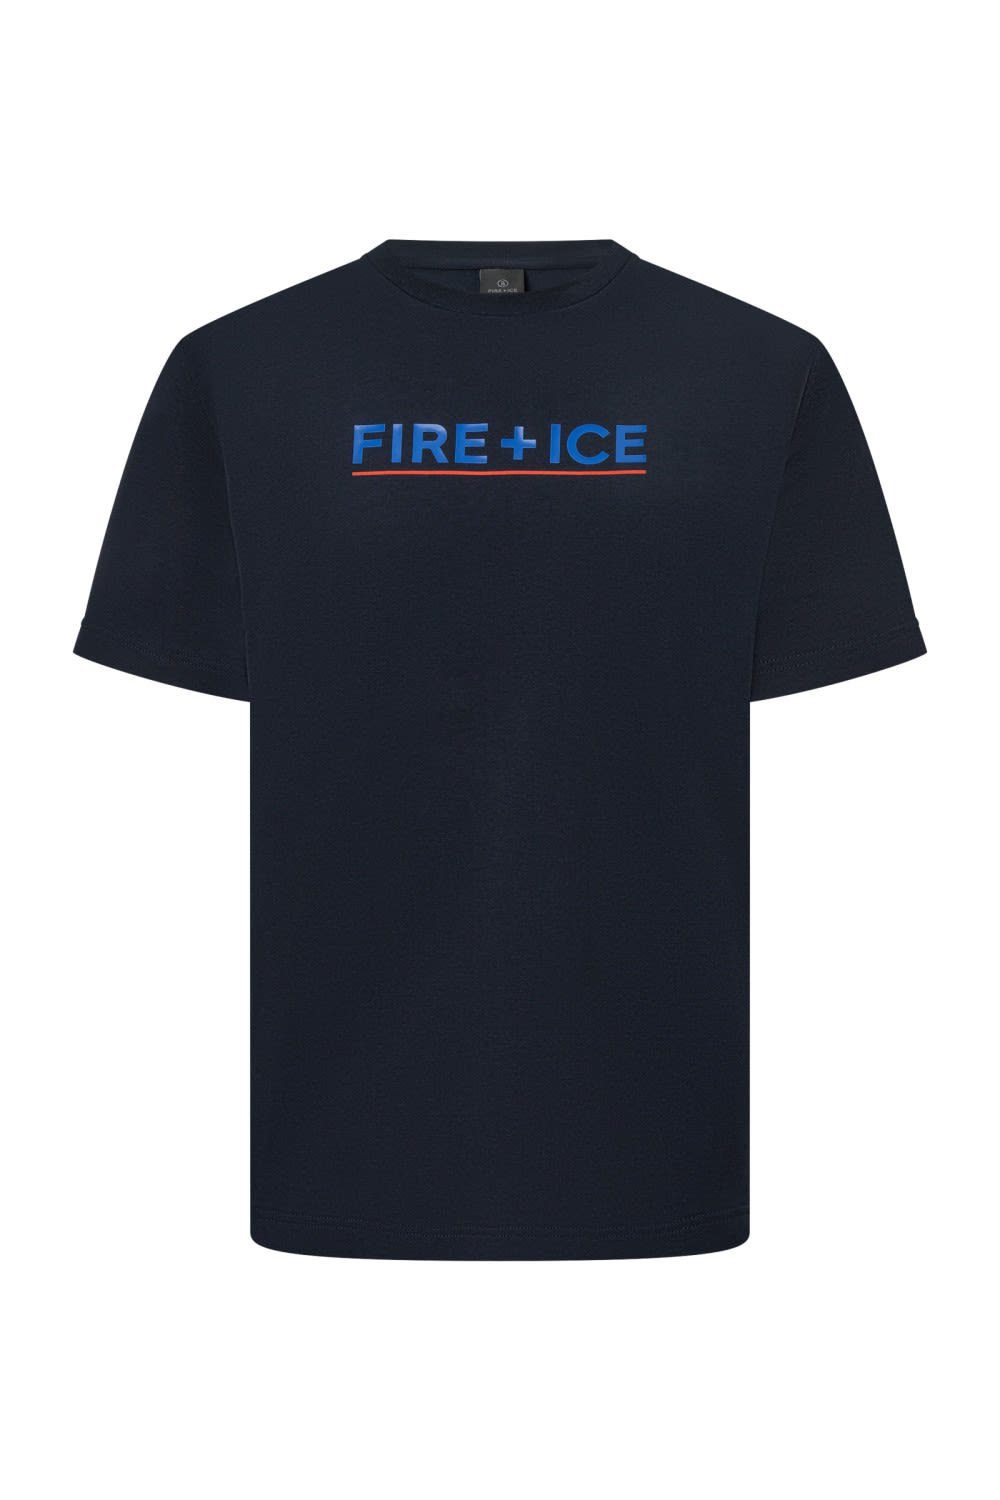 Bogner Fire + Ice T-Shirt Bogner Fire + Ice Mens Matteo Herren Kurzarm-Shirt Deepest Navy